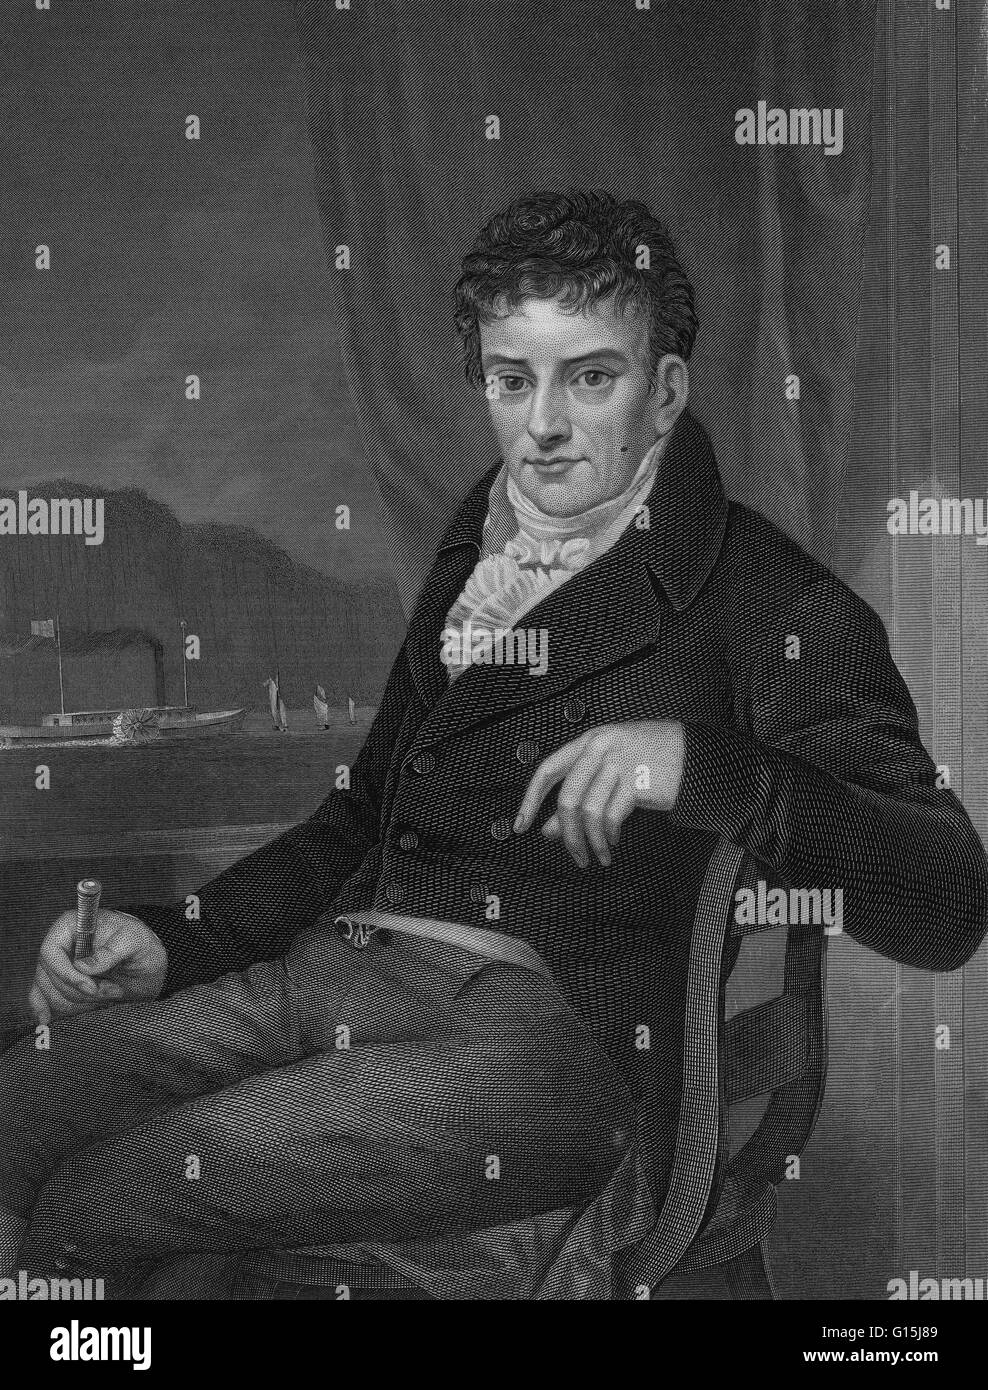 Robert Fulton (14 novembre 1765 - 24 febbraio 1815) era un ingegnere americano e inventore ha cominciato come un ritratto del pittore, e si trasferisce in Inghilterra nel 1787. Durante il suo soggiorno in Inghilterra ha focalizzato la sua creatività sulle attuali sfide di ingegneria e divenne involv Foto Stock